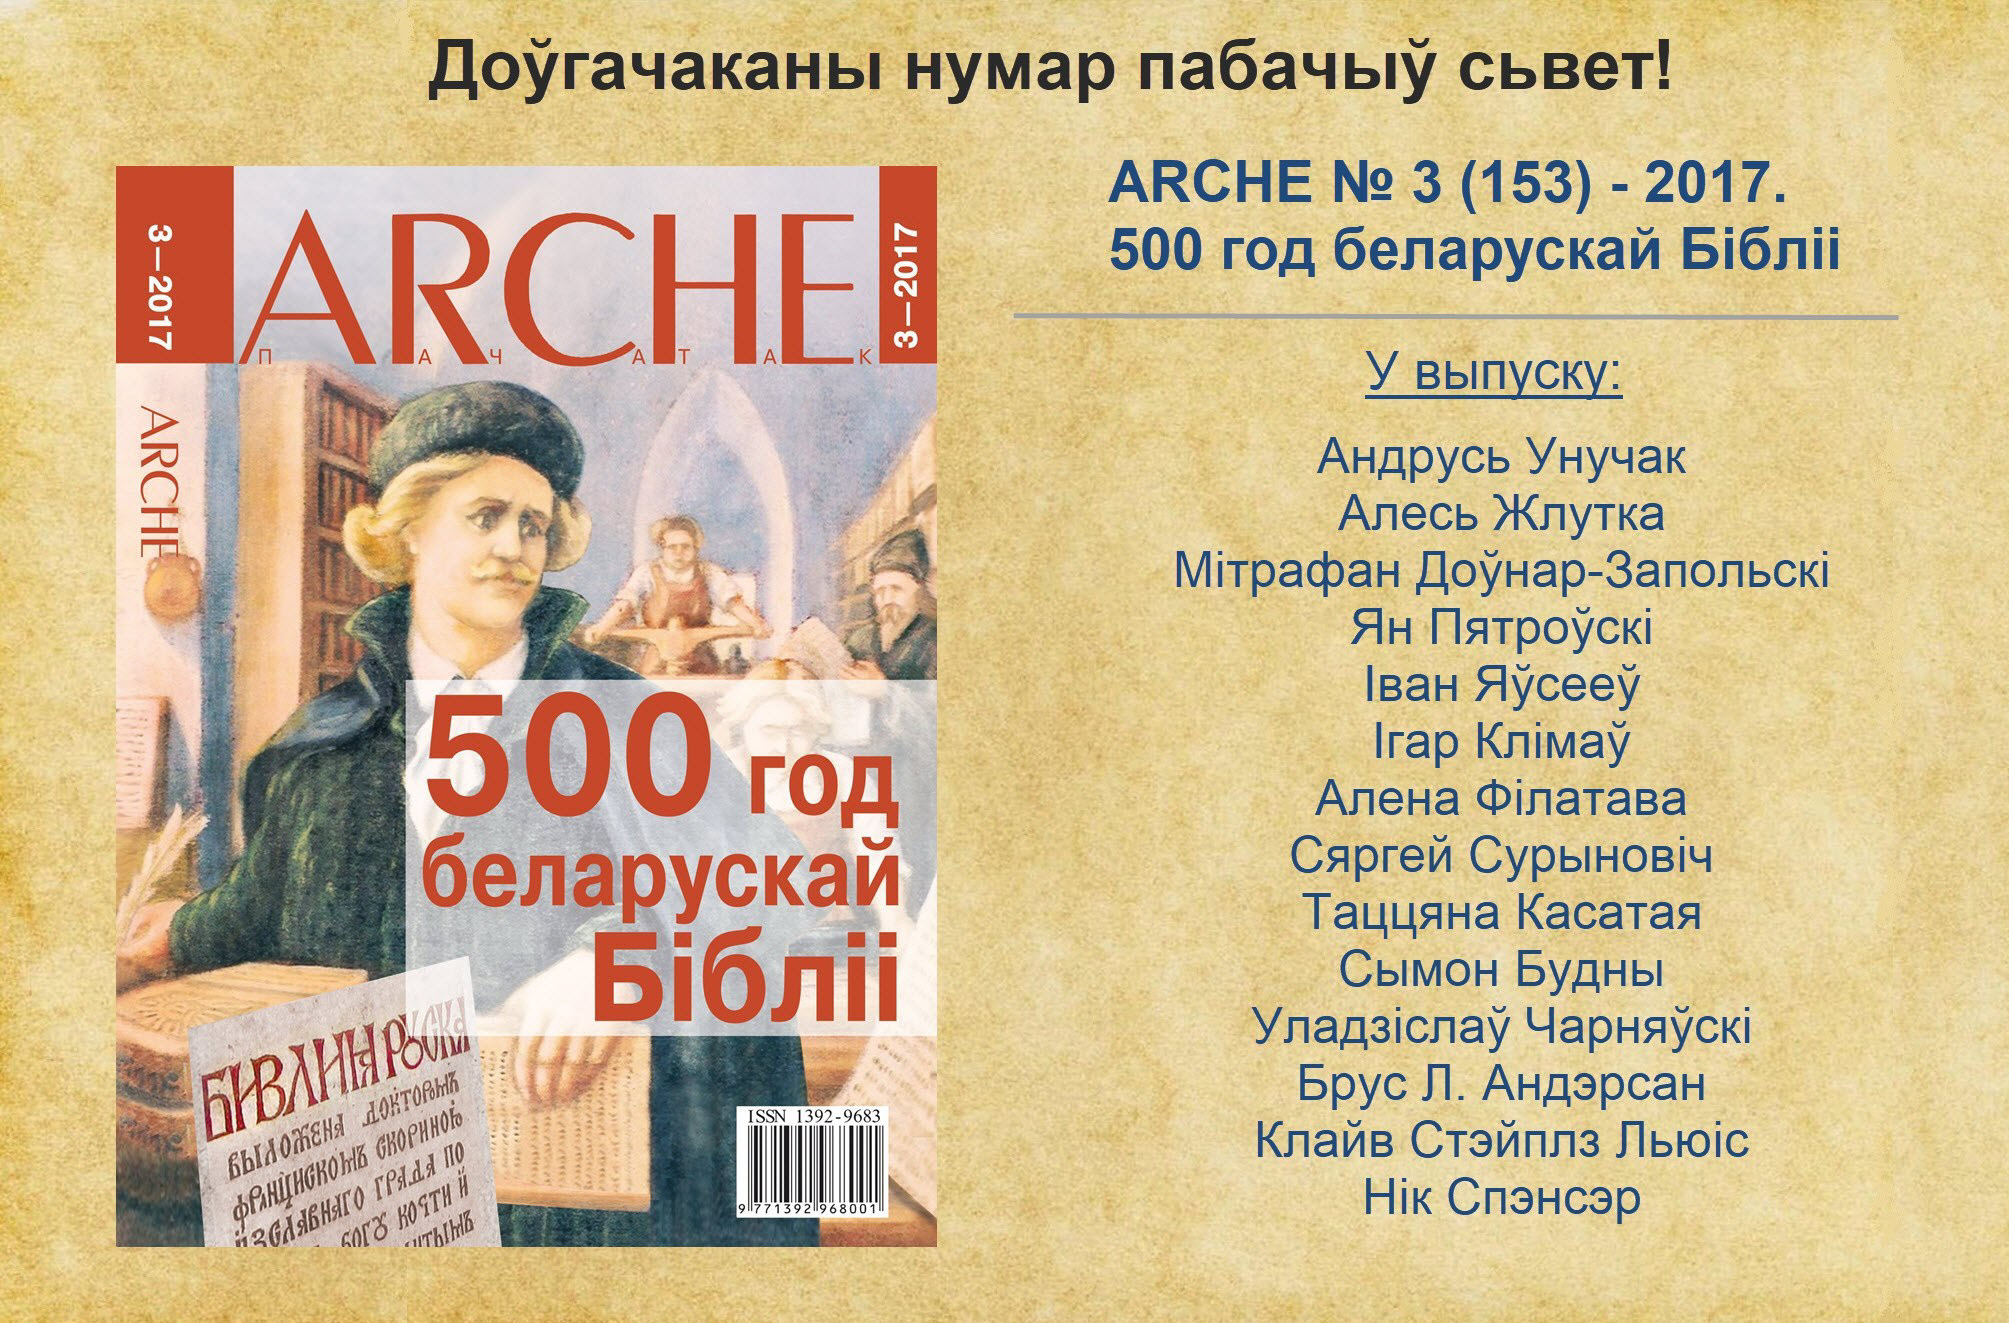 Выйшаў з друку выпуск ARCHE, прысьвечаны першай беларускай Бібліі